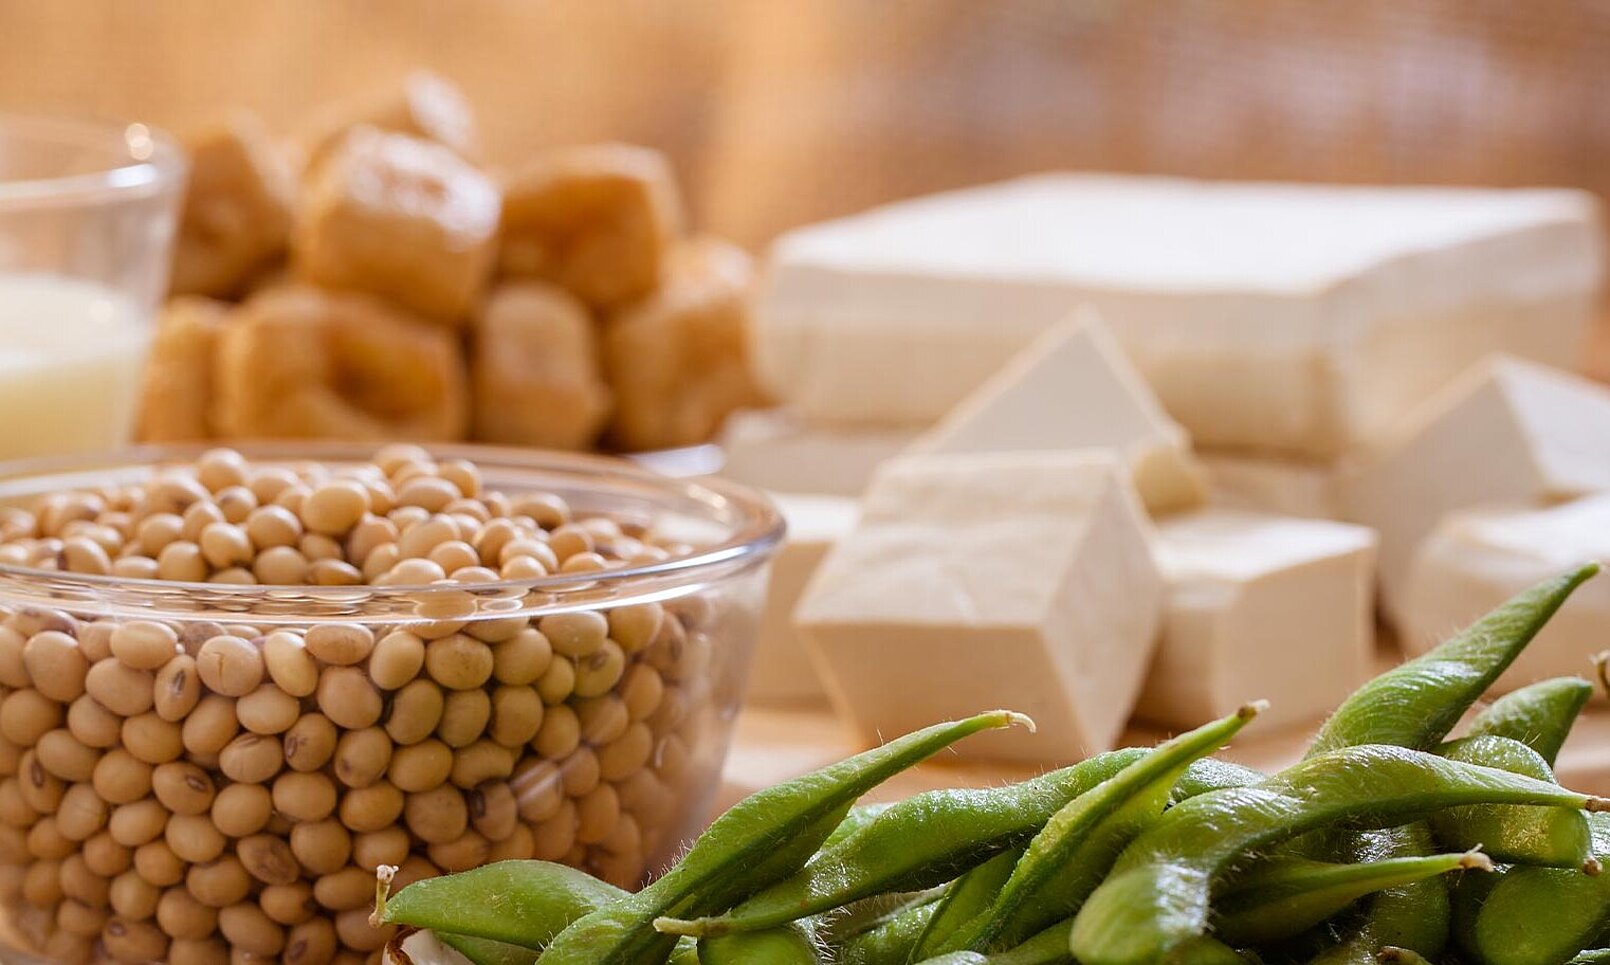 KRONEN Nahrungsmitteltechnik: vegane Produkte verarbeiten, z.B. Schneiden oder Rupfen von Soja- und Erbsenproteinplatten